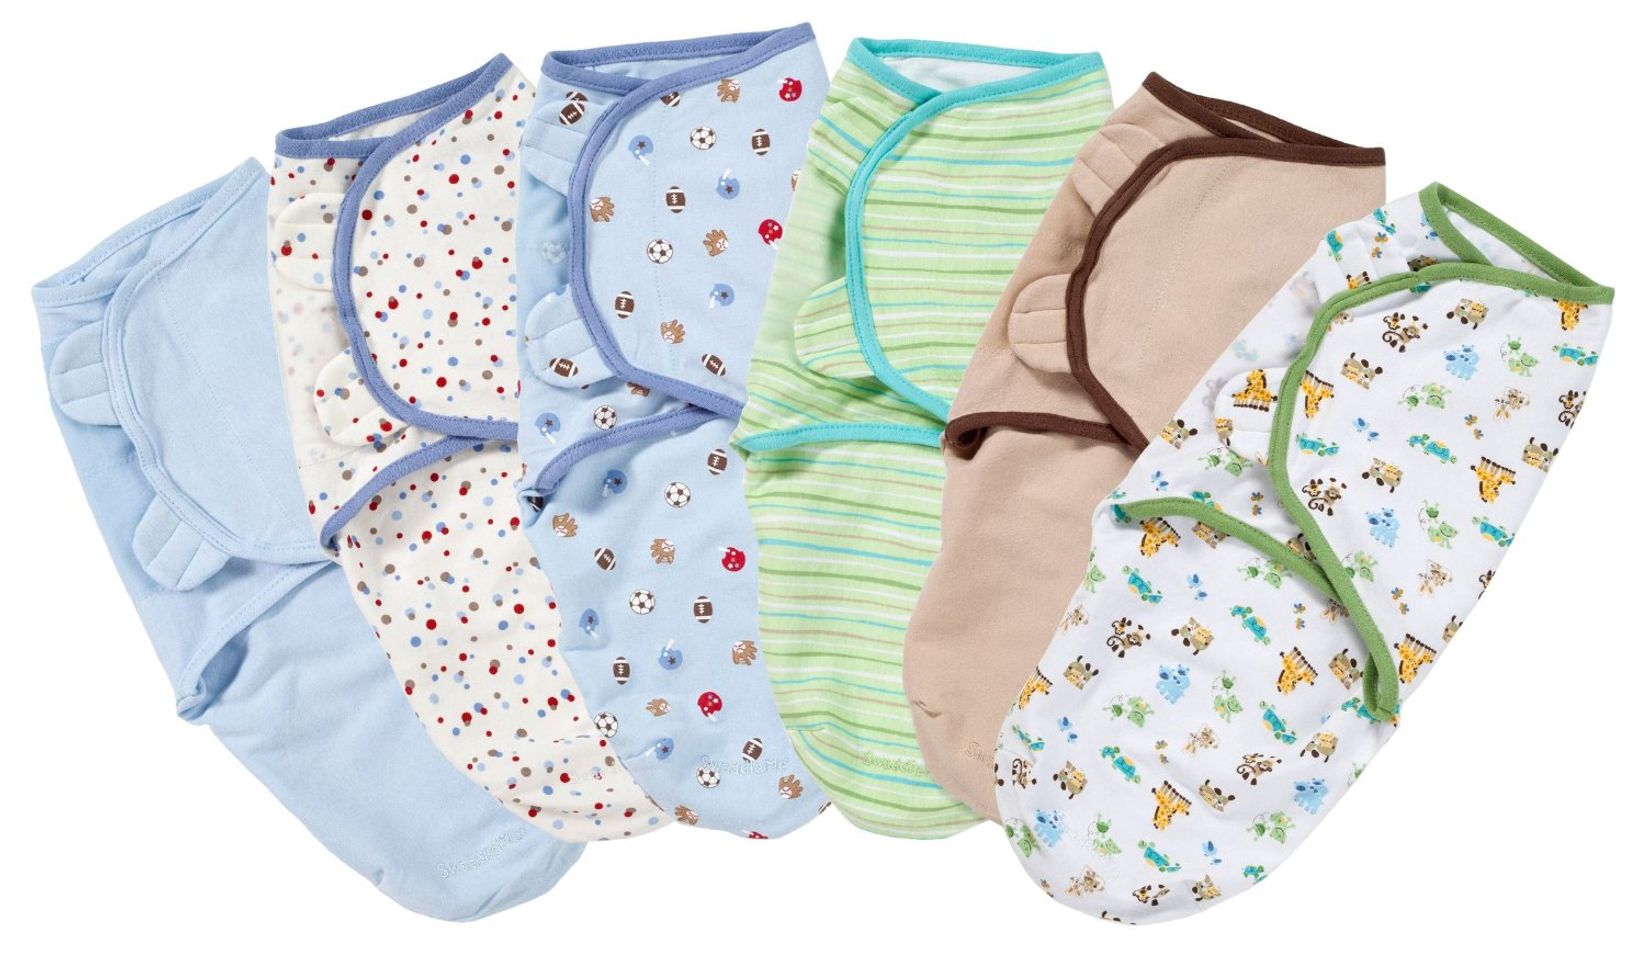 Túi ngủ sơ sinh nhập Mỹ Summer Infant SM74040 nhiều màu sắc